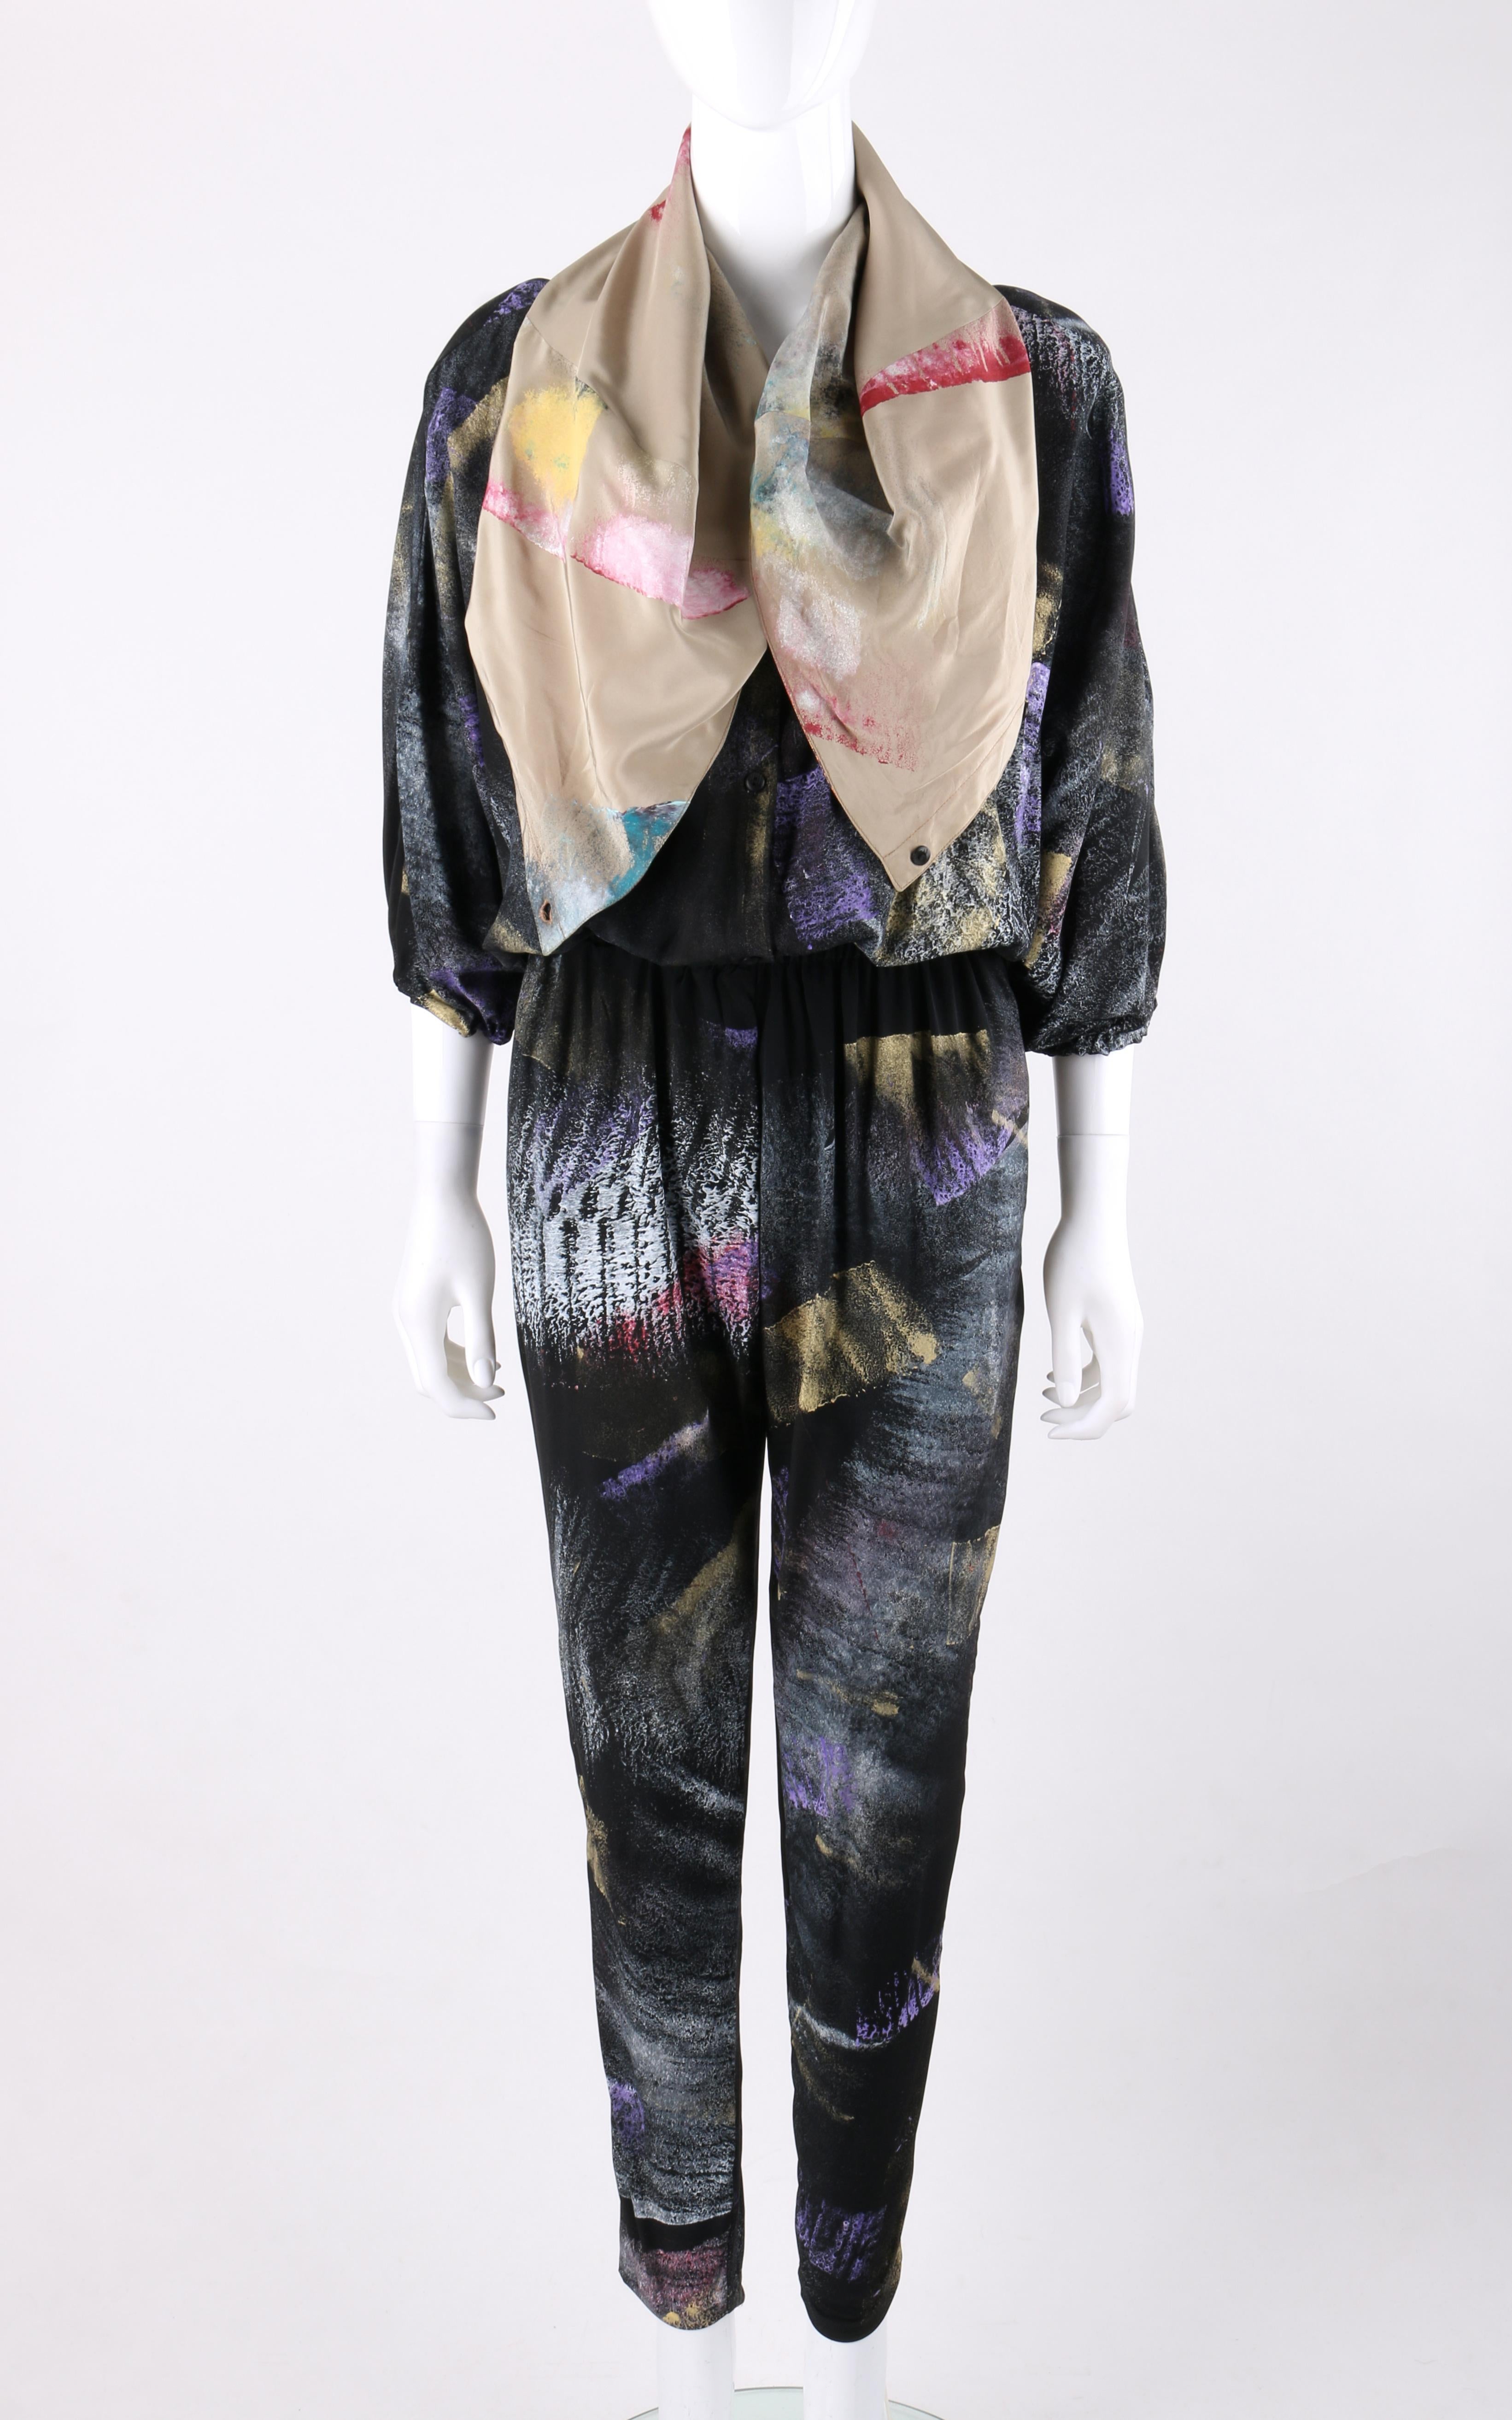 Black CHIA JEN JENNIFER MACKEY Hand Printed Silk Art To Wear Jumpsuit OOAK For Sale